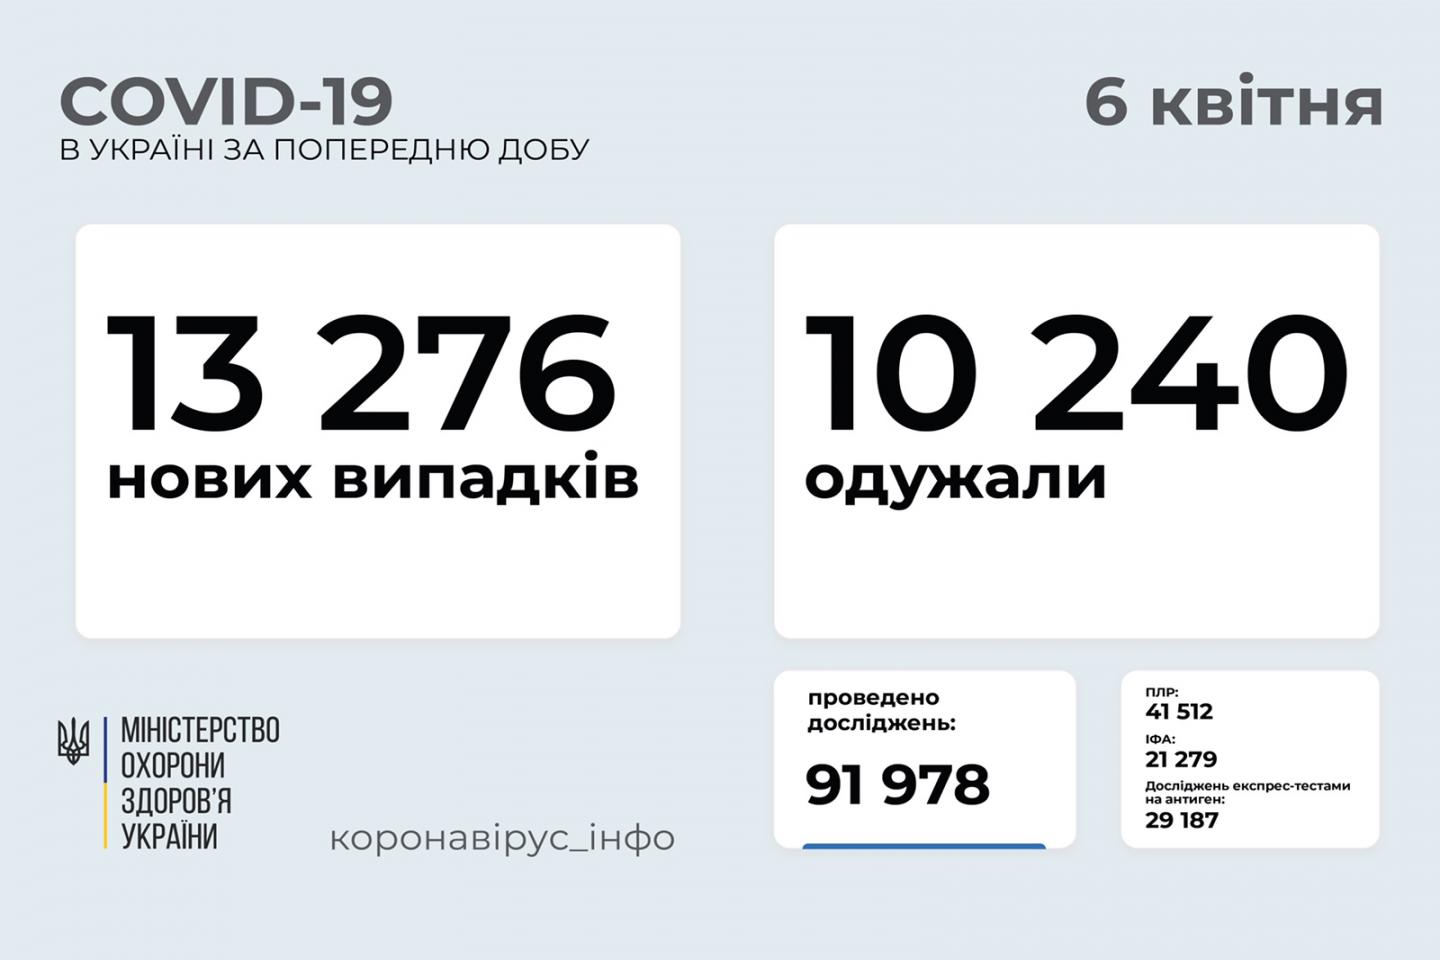 http://dunrada.gov.ua/uploadfile/archive_news/2021/04/06/2021-04-06_5602/images/images-29317.jpg